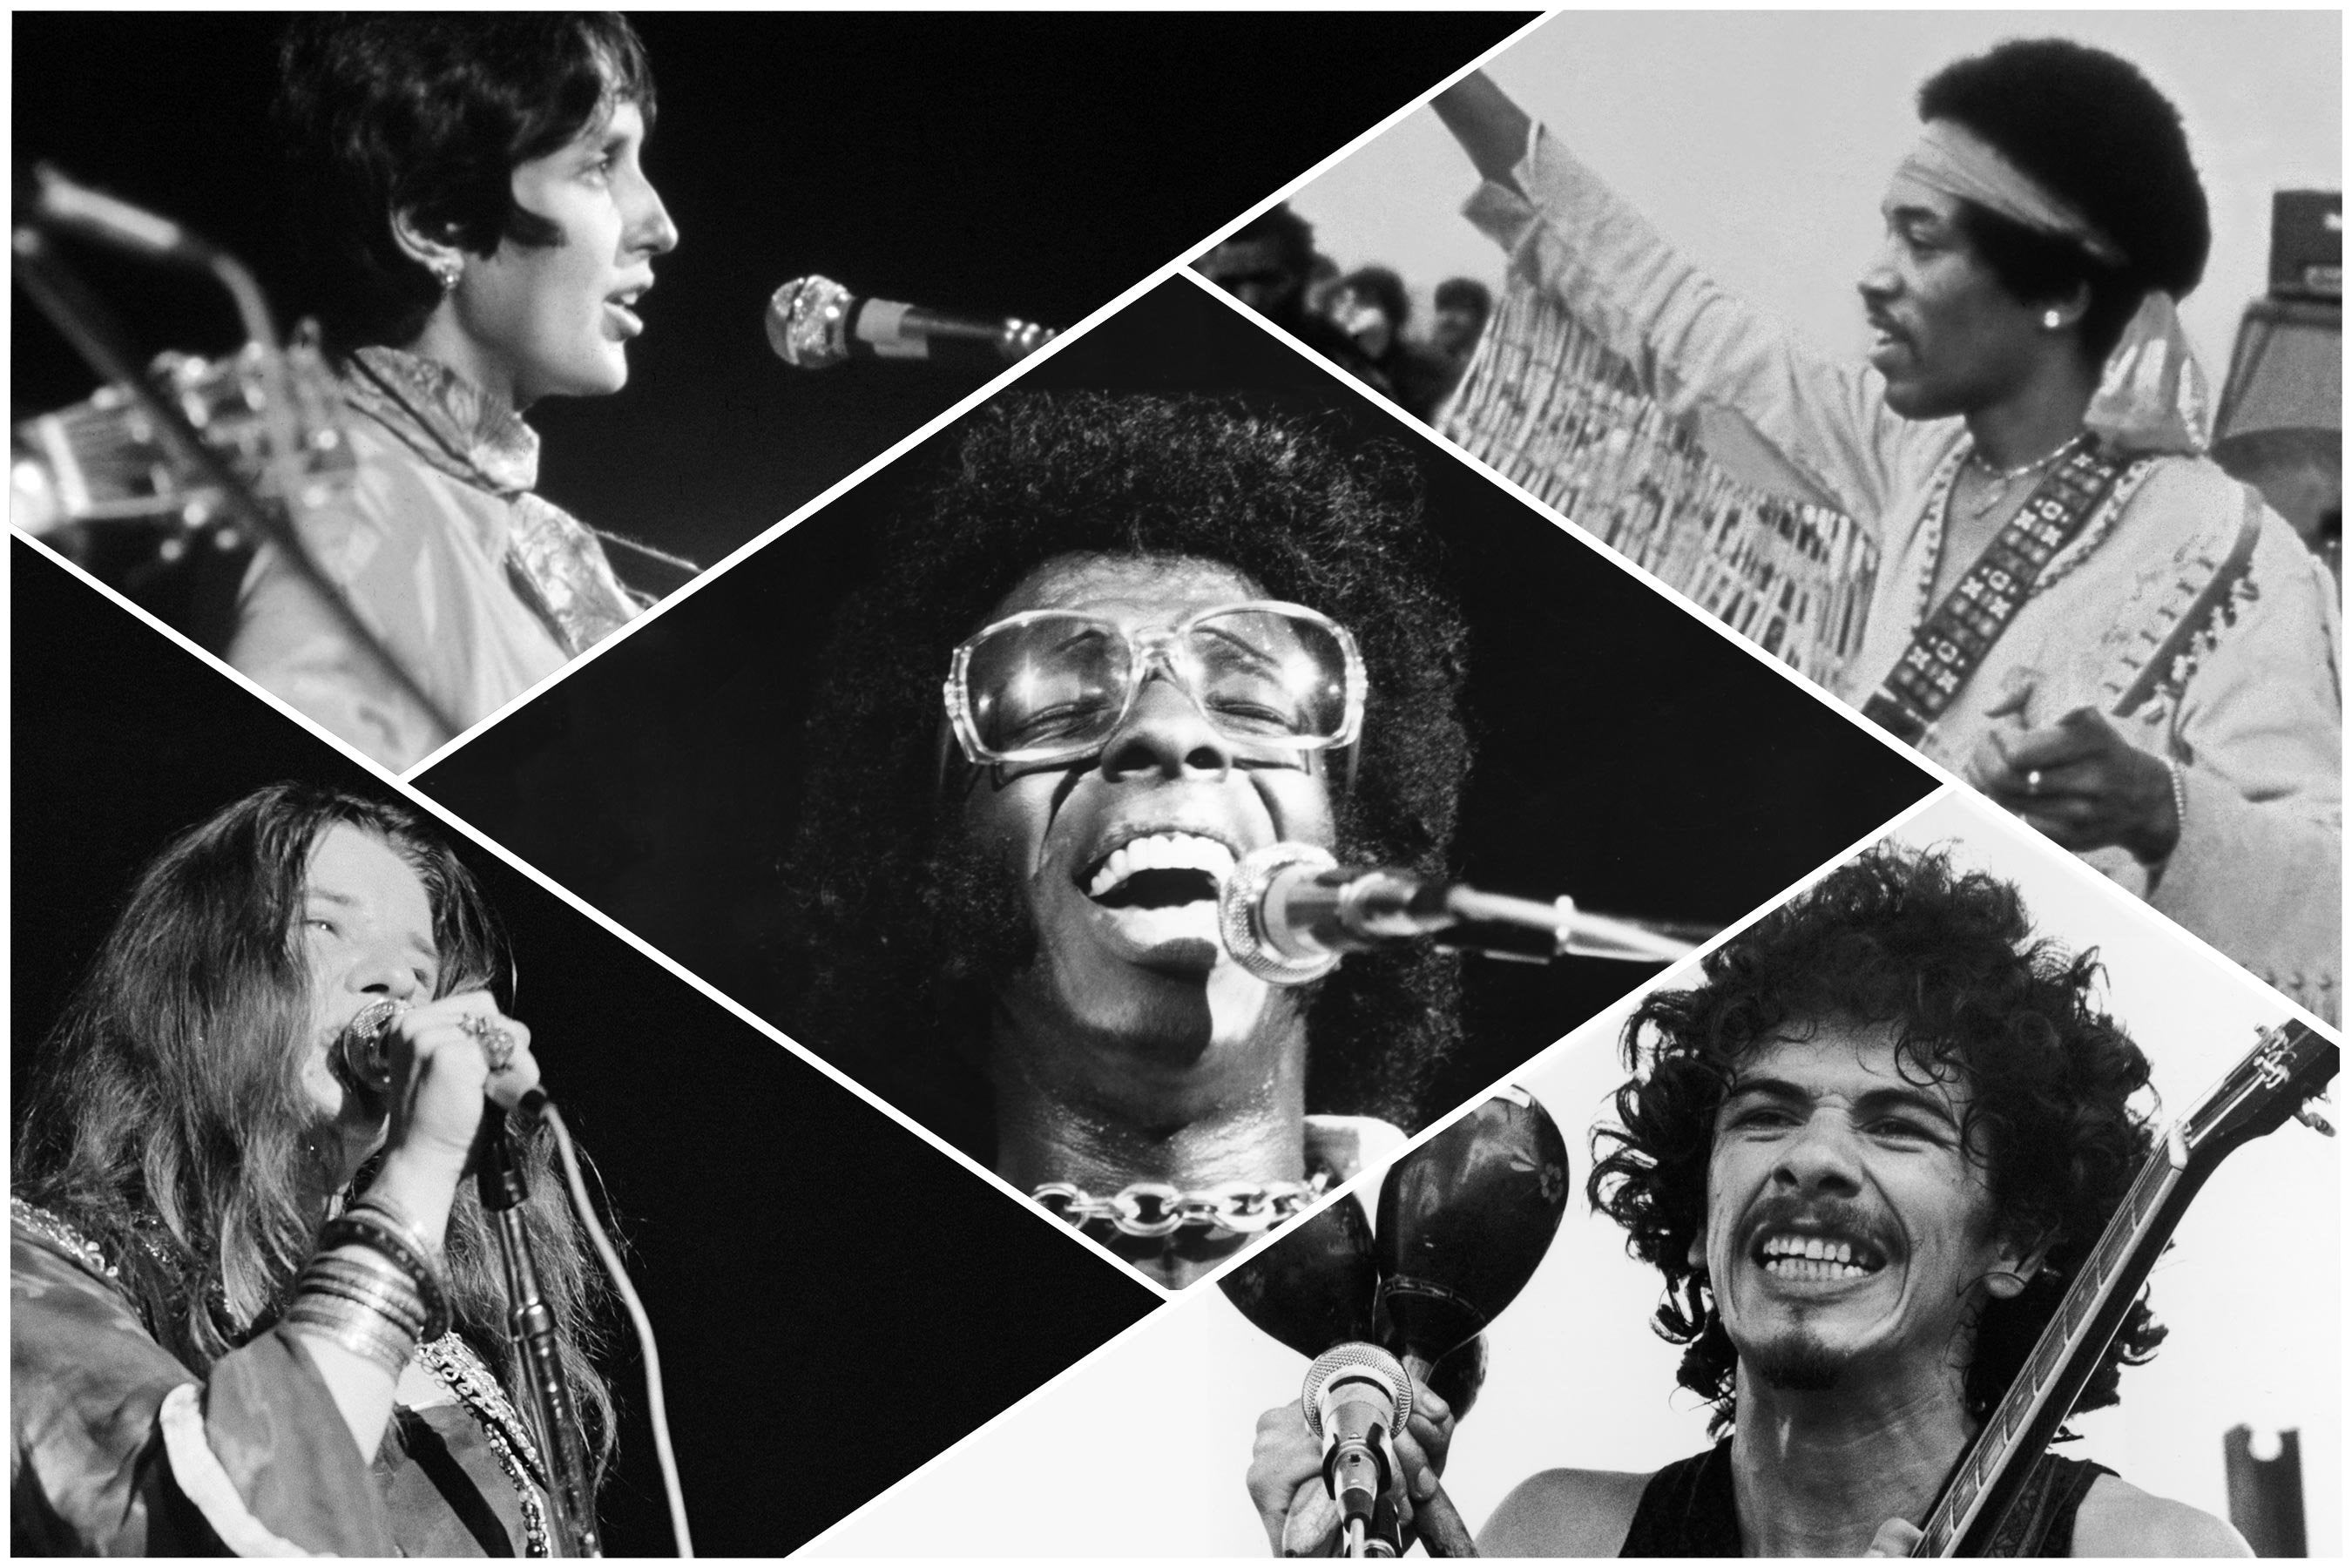 Artists in attendance a Woodstock